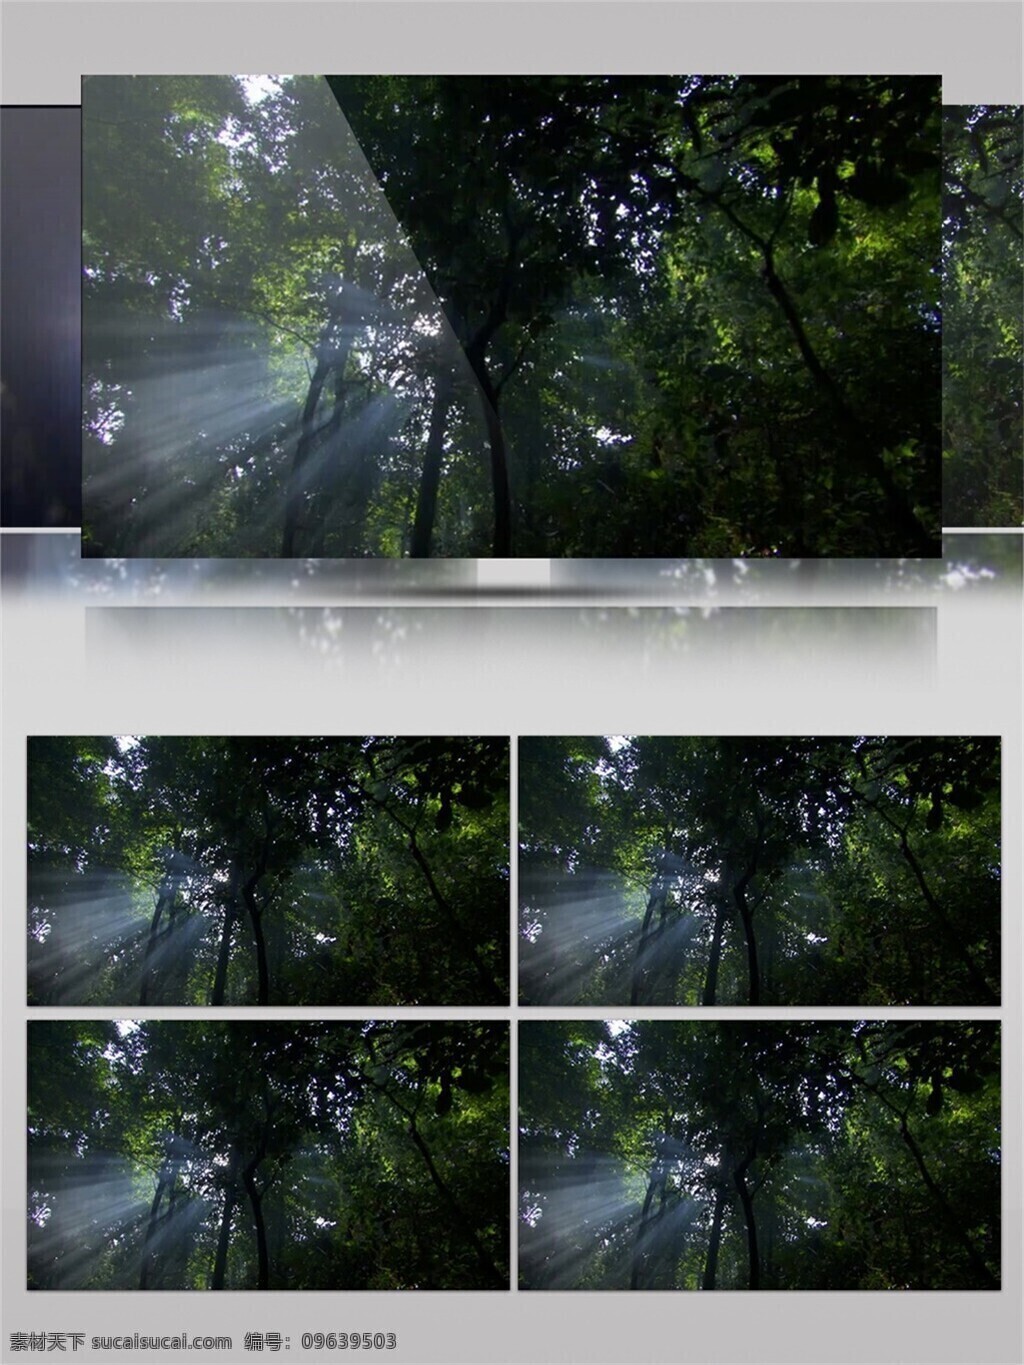 阳光 穿过 森林 视频 音效 绿色 植物 大自然 清新 视频素材 视频音效